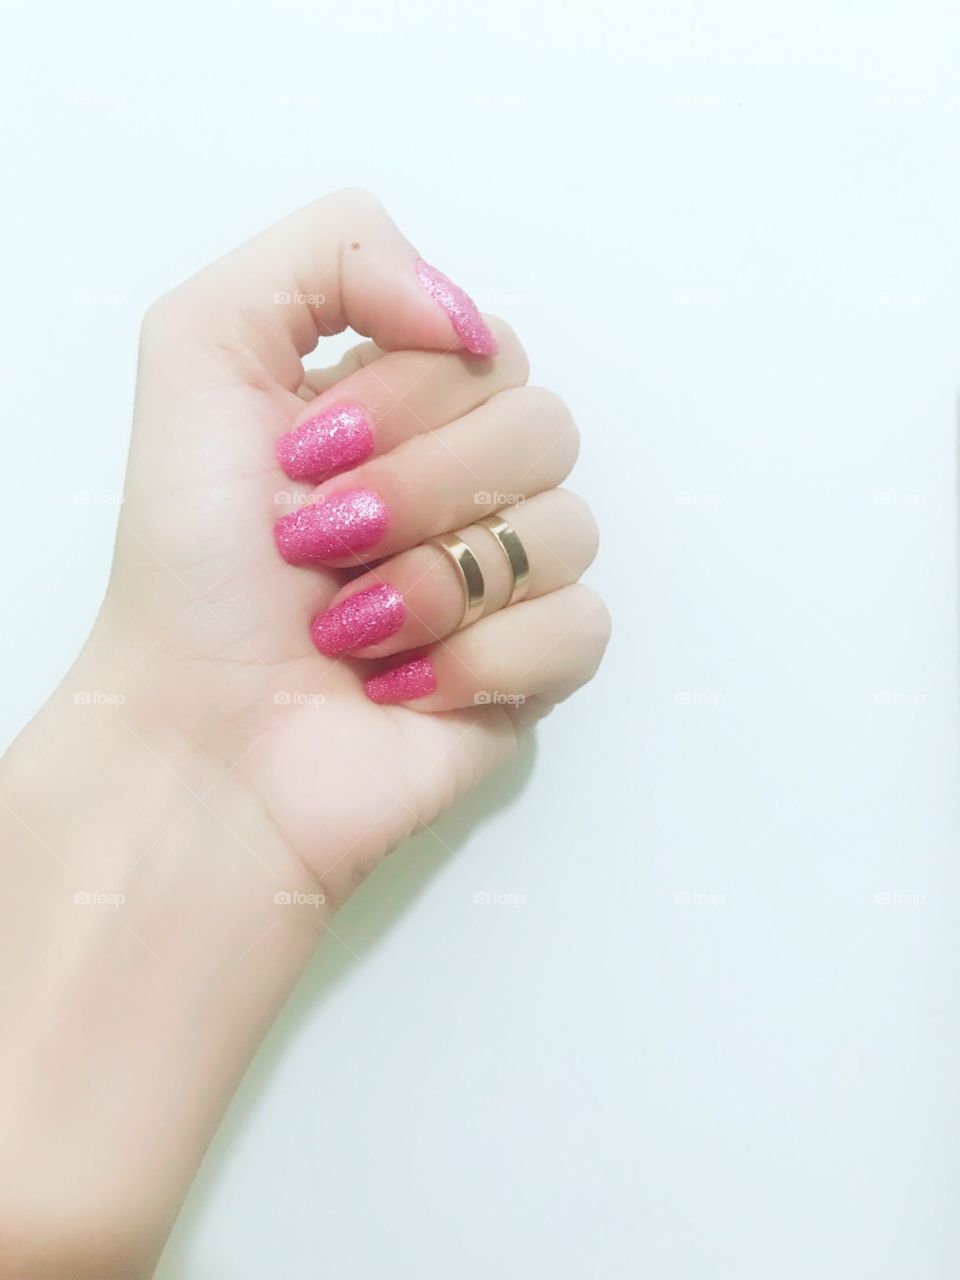 Minhas unhas, Rosa pink com glitter, adorável 😊